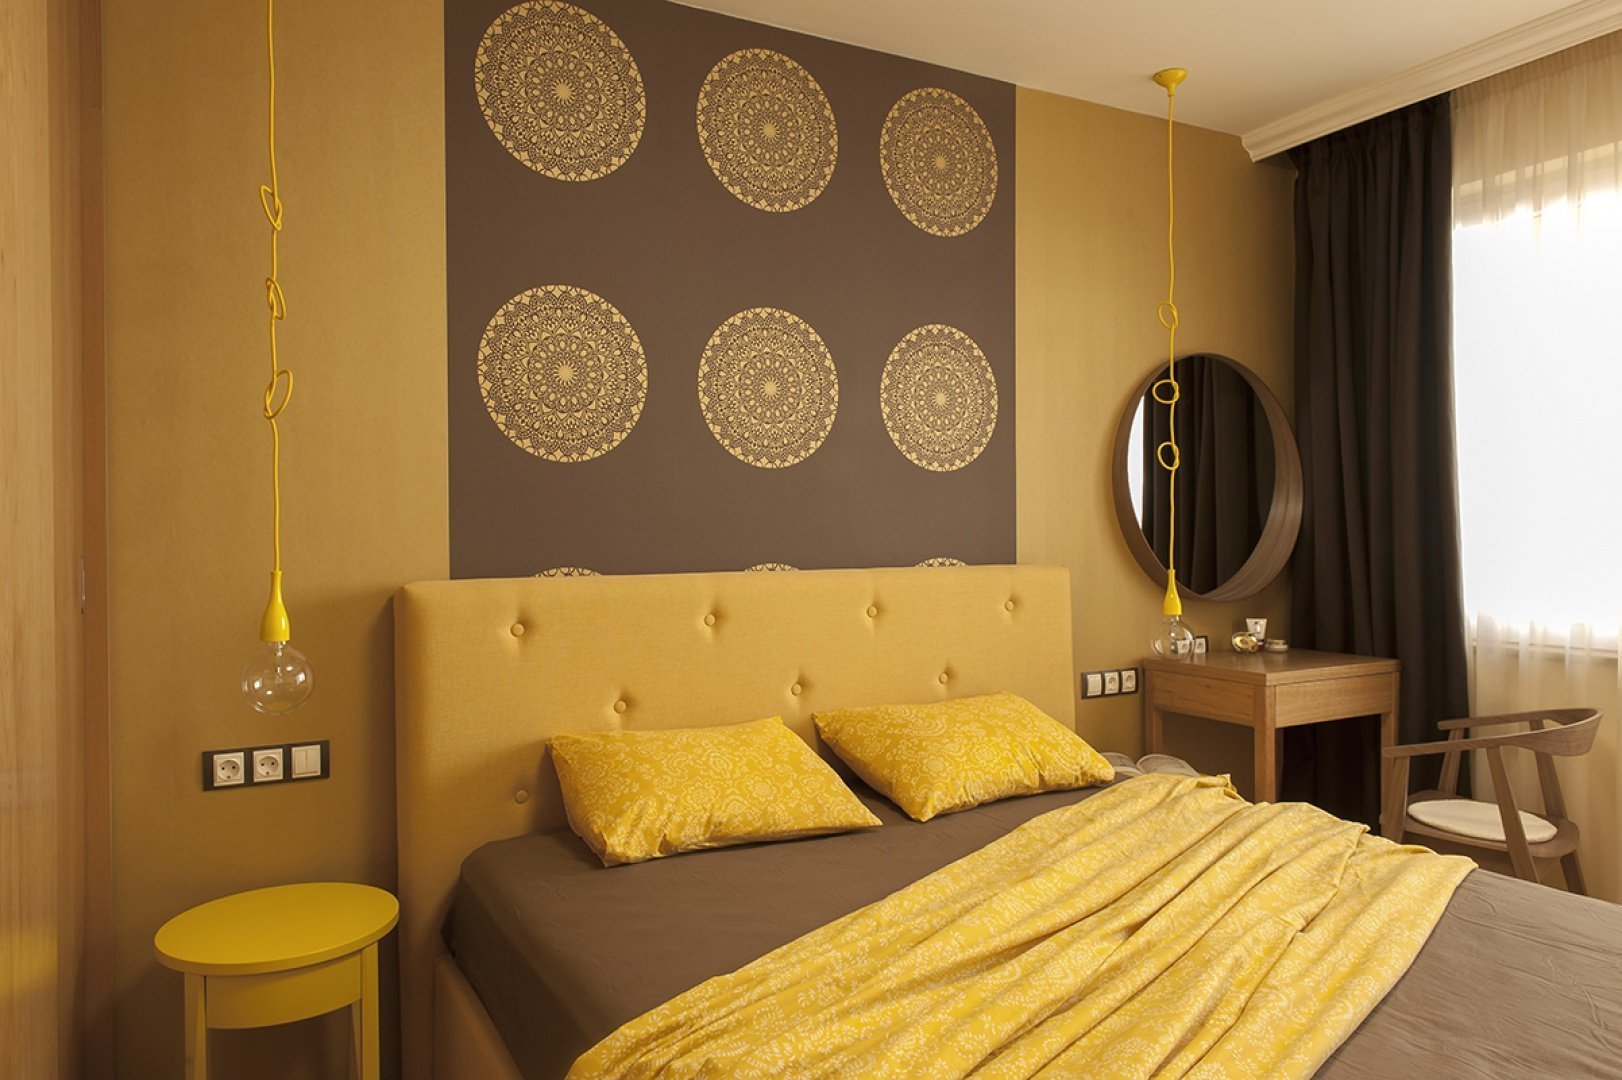 Бежево горчичный. Спальня в желтом цвете. Желтый интерьер спальни. Спальня в горчичном цвете. Спальня в желтых тонах.